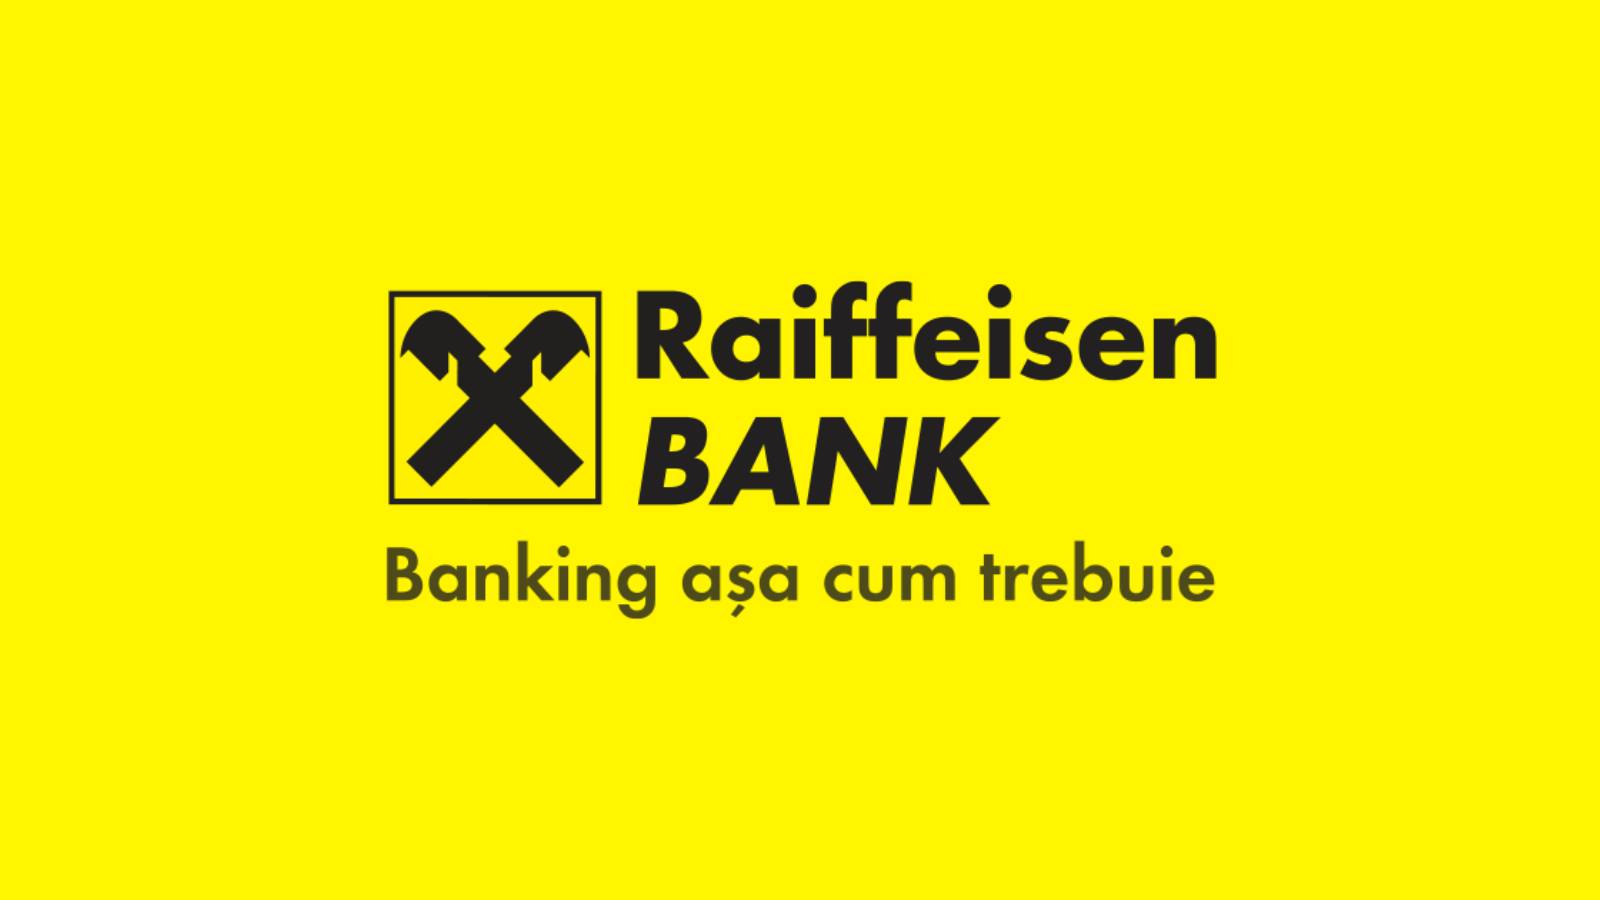 Raiffeisen Bank GRATIS officiële informatie voor Roemeense klanten vandaag